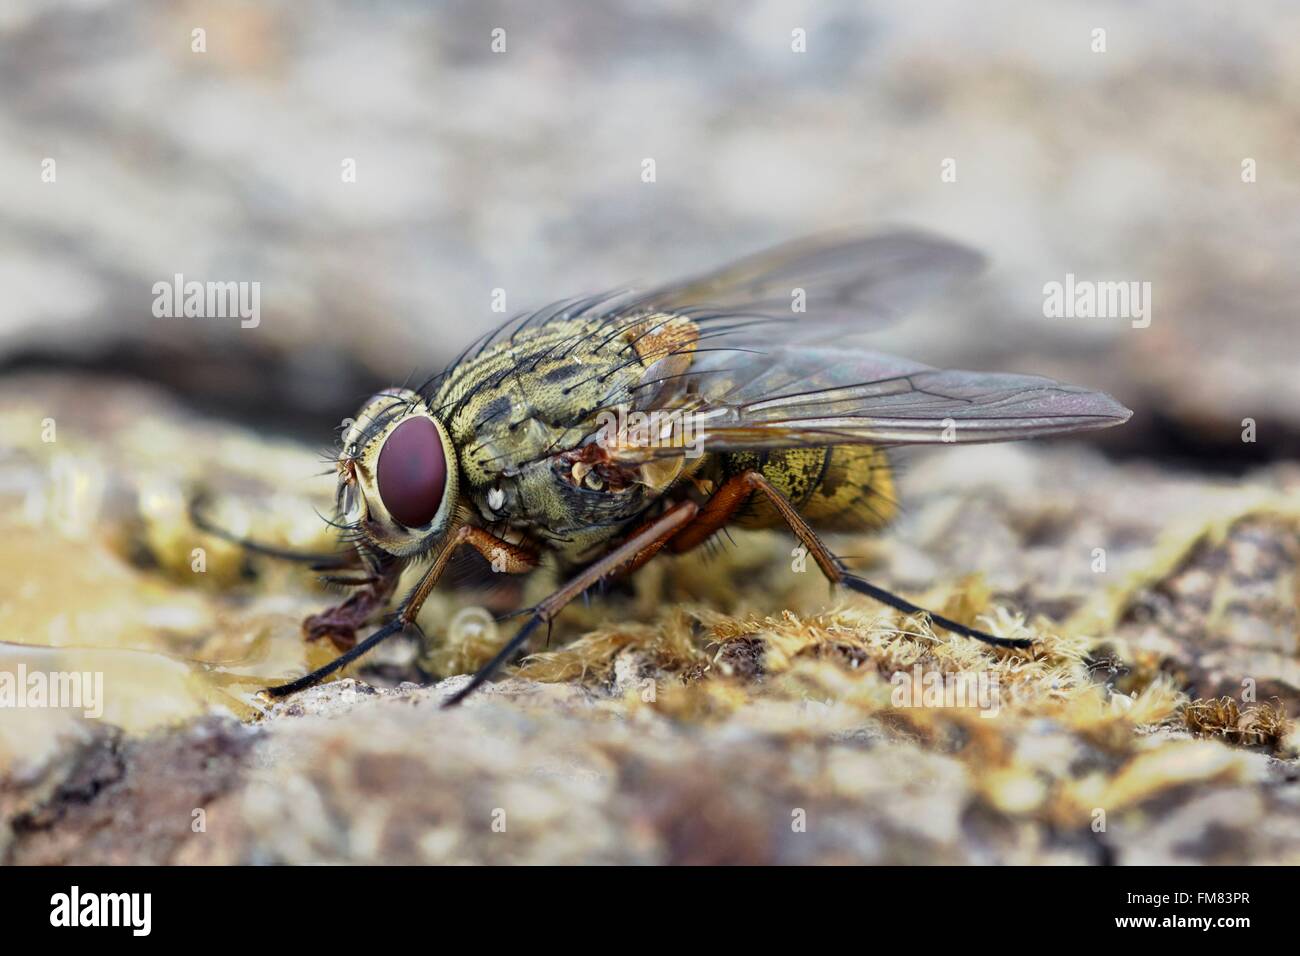 France, Morbihan, Diptera, Muscidae, Muscid Fly (Mydaea corni) Stock Photo